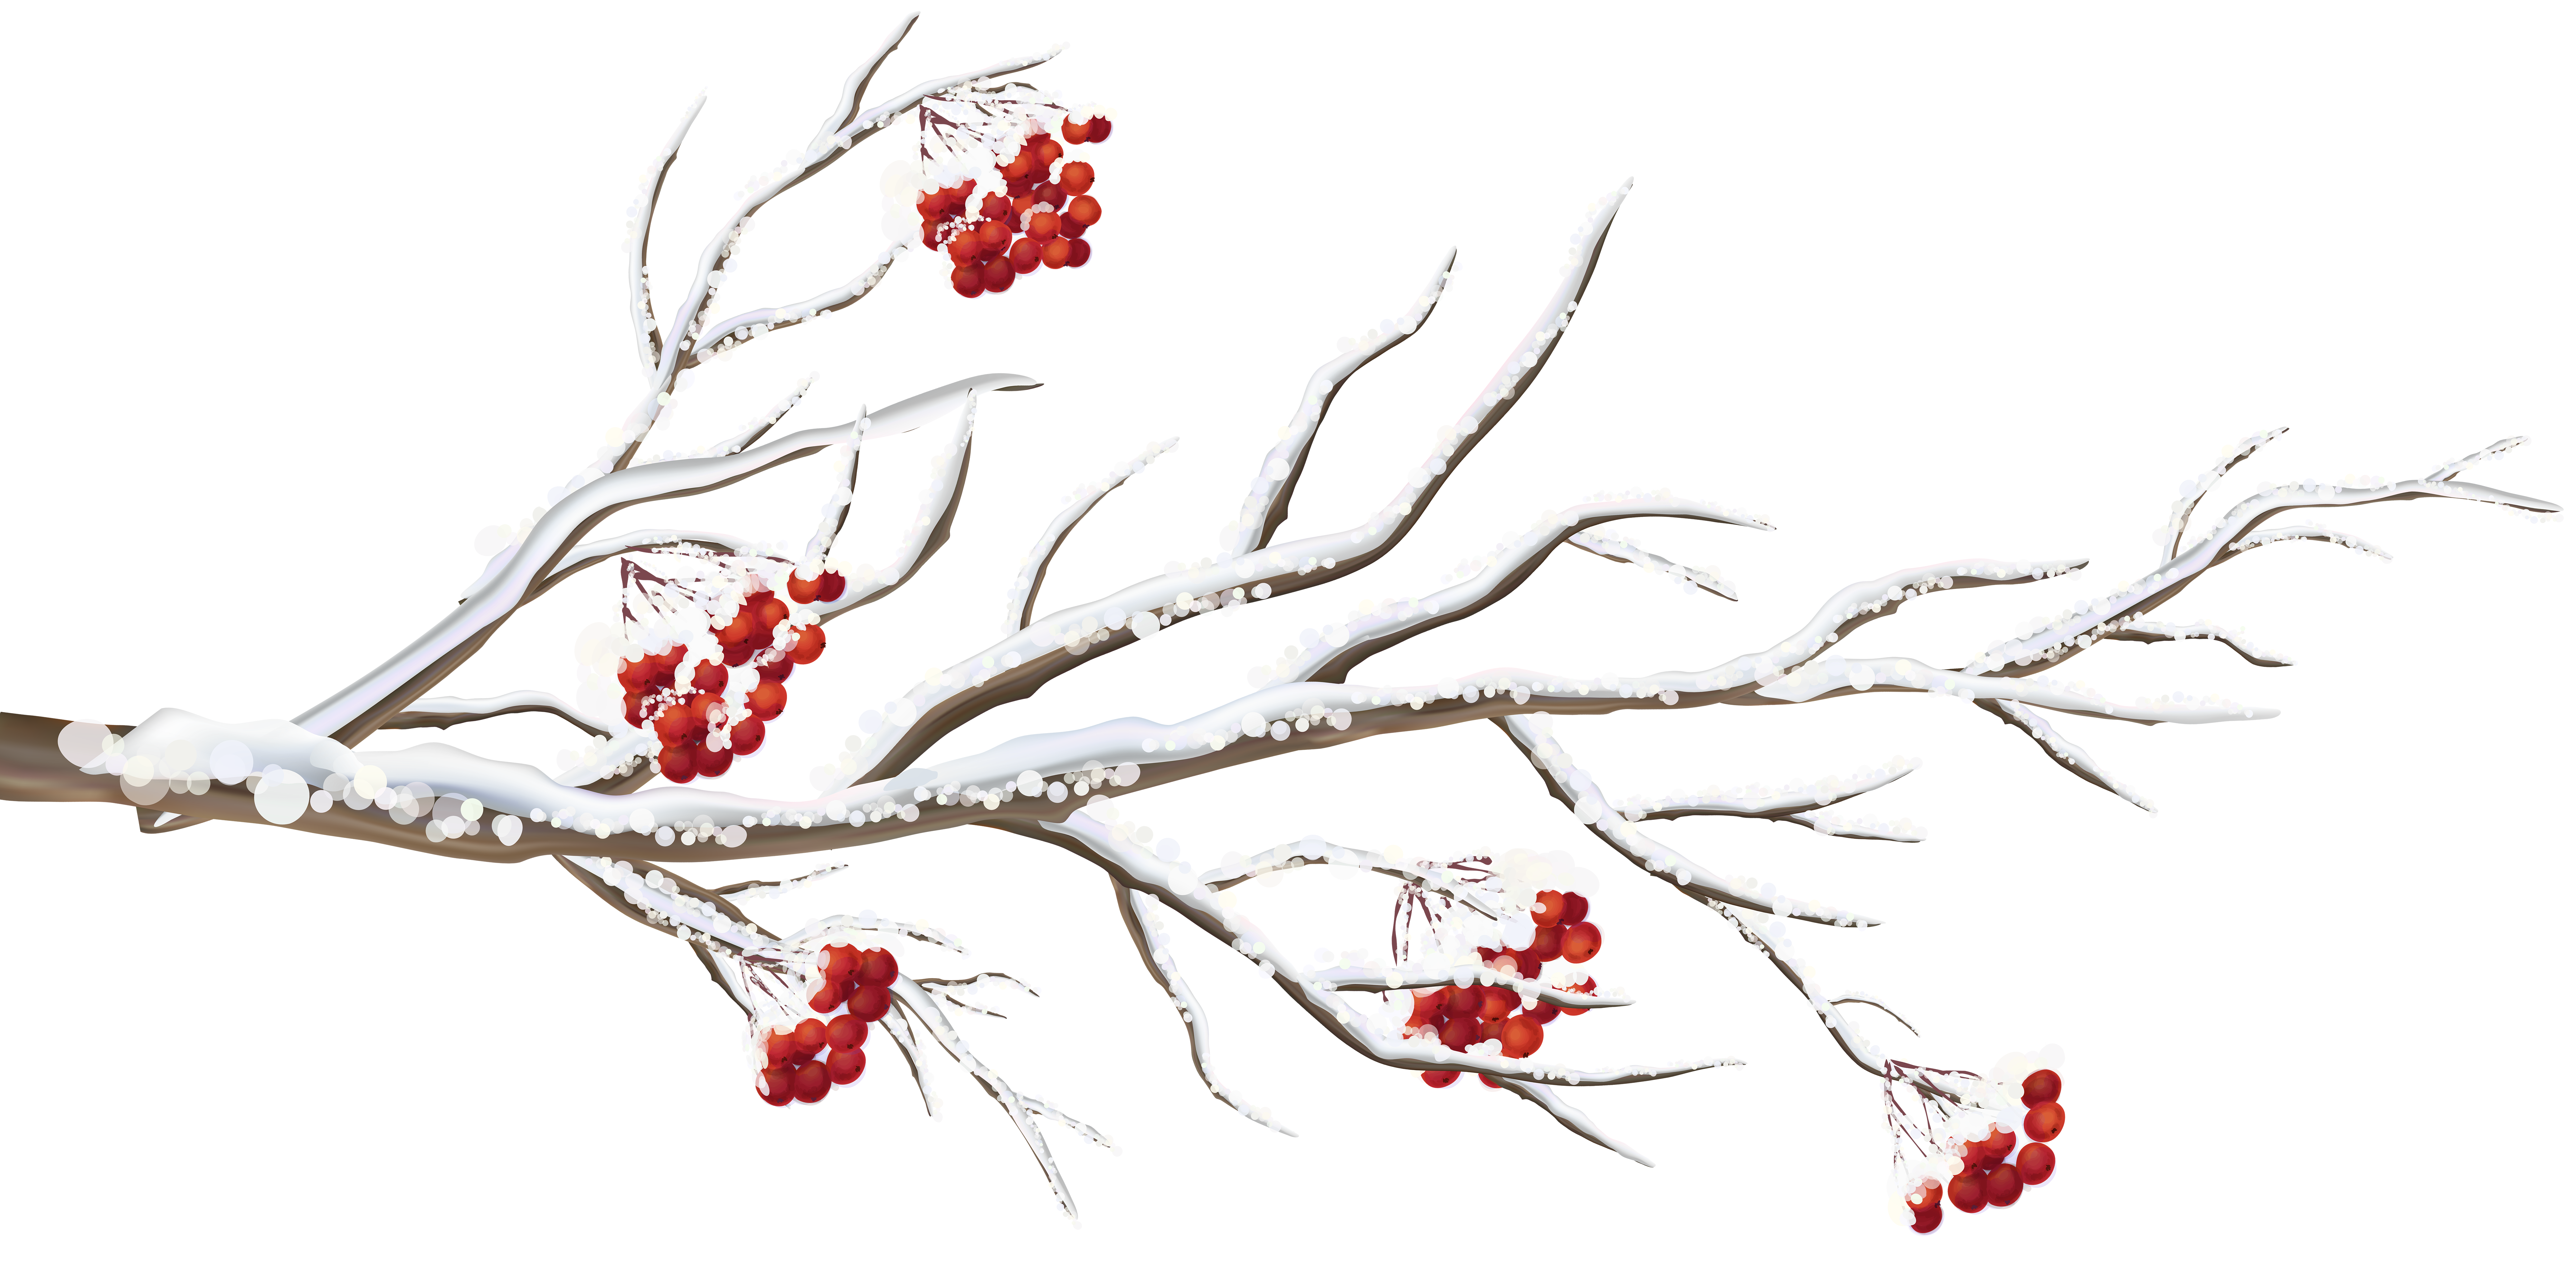 winter tree branch clip art